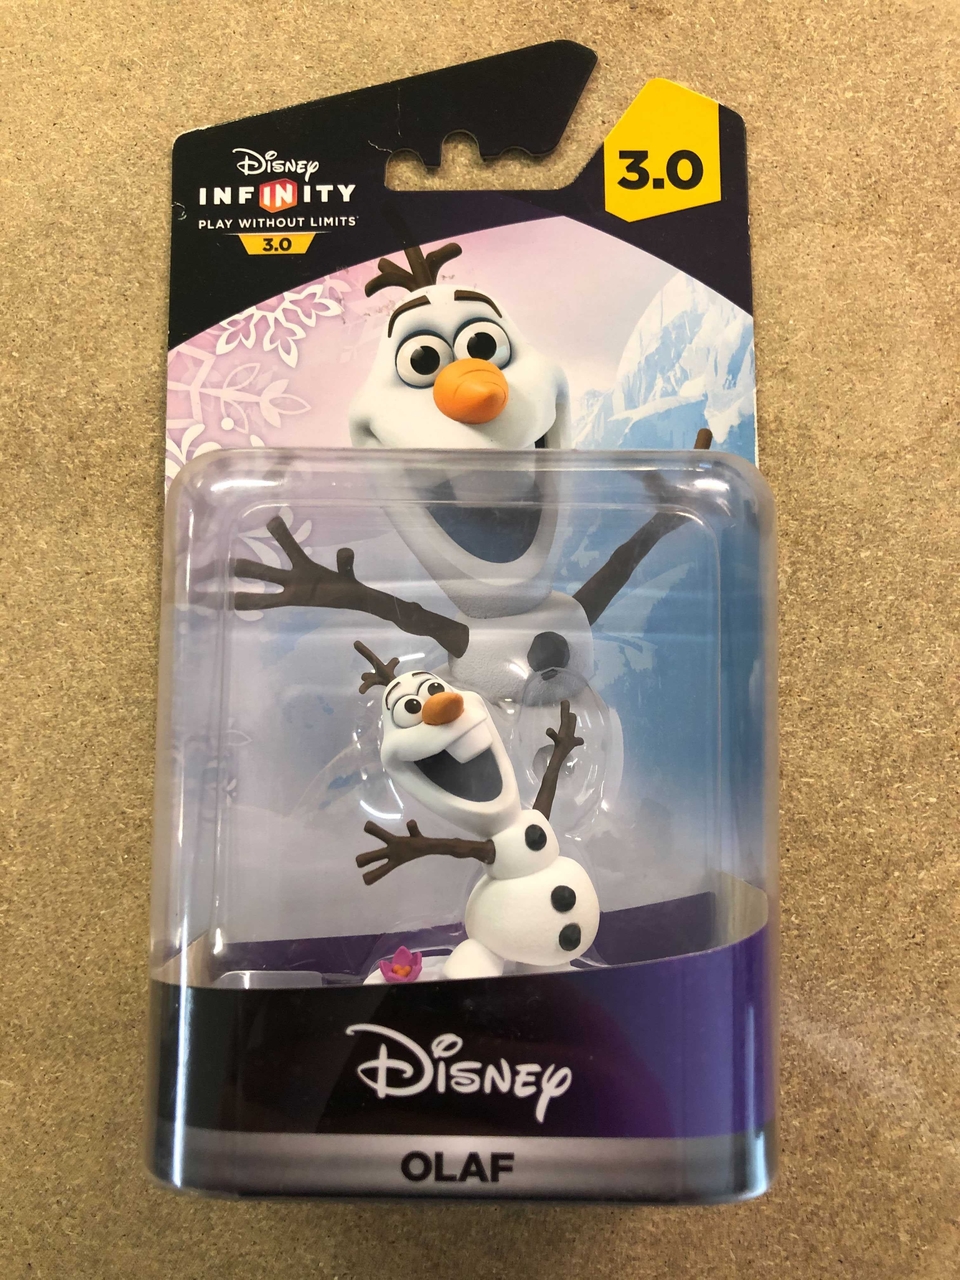 Disney infinity 3.0 Olaf - Wii Hardware